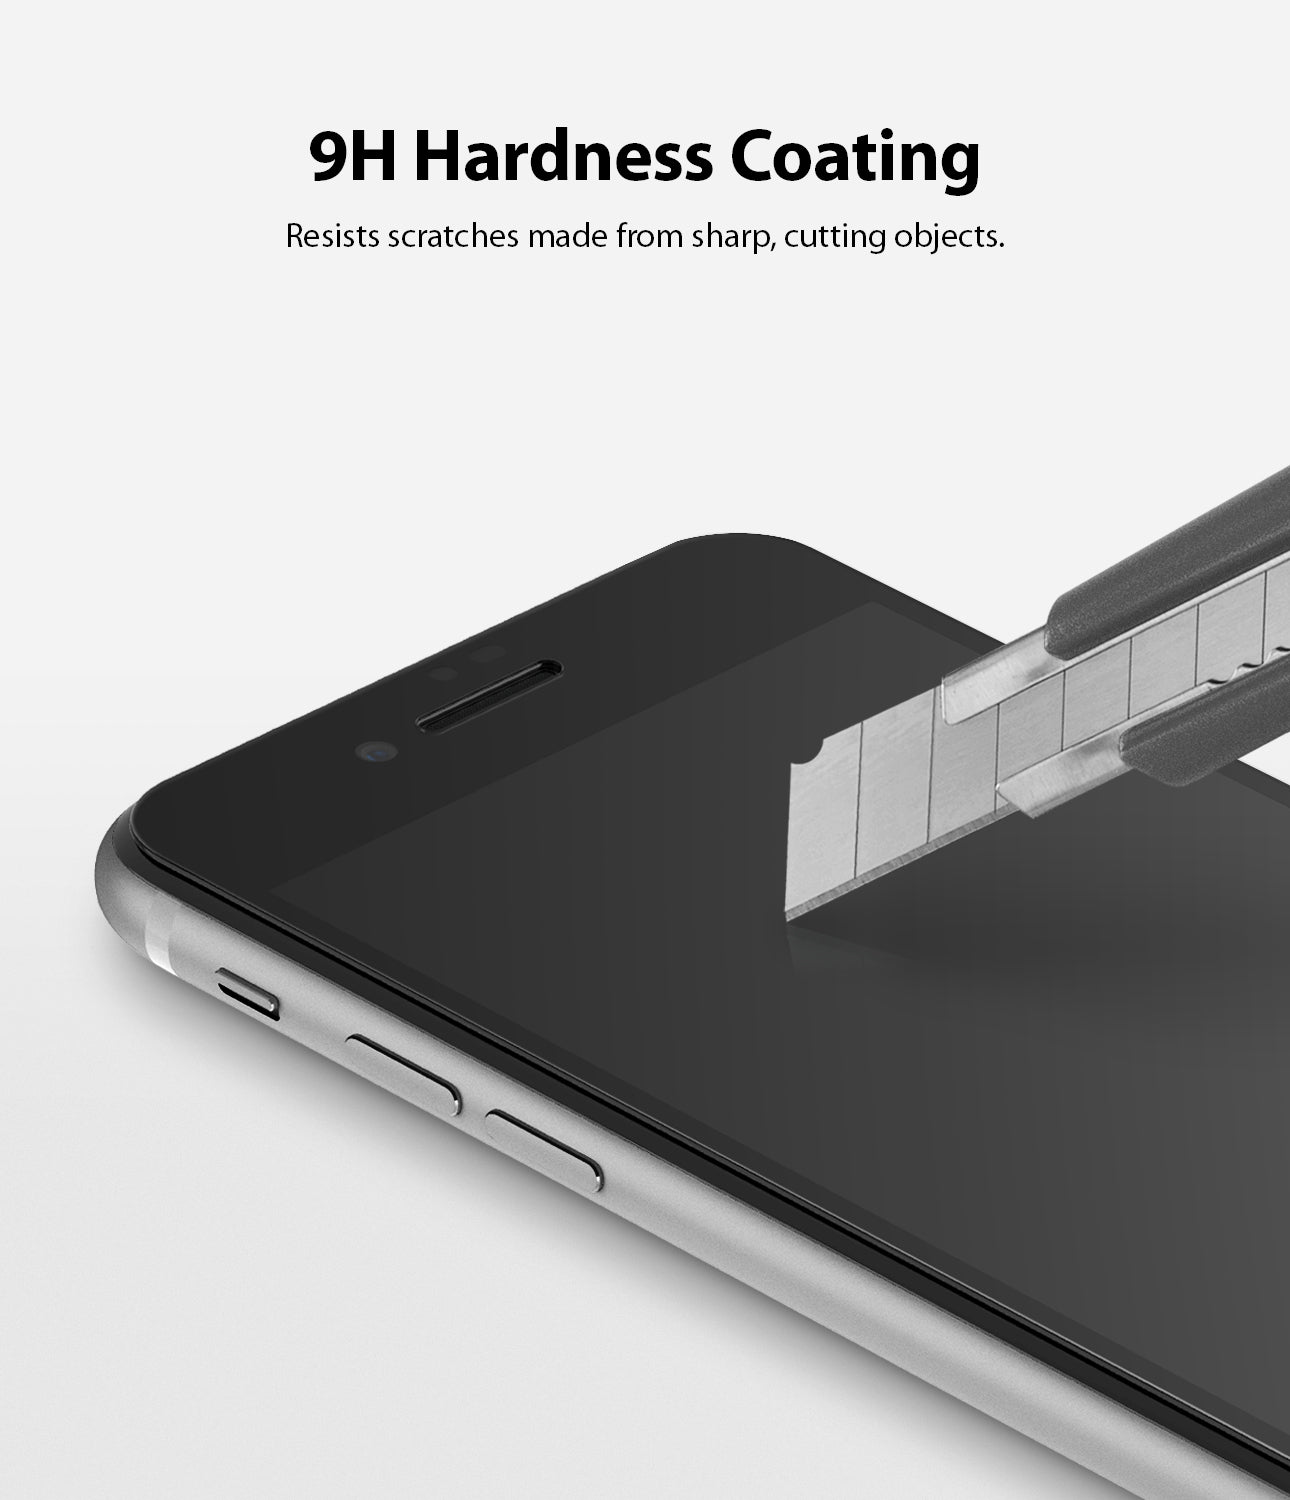 9h hardness coating